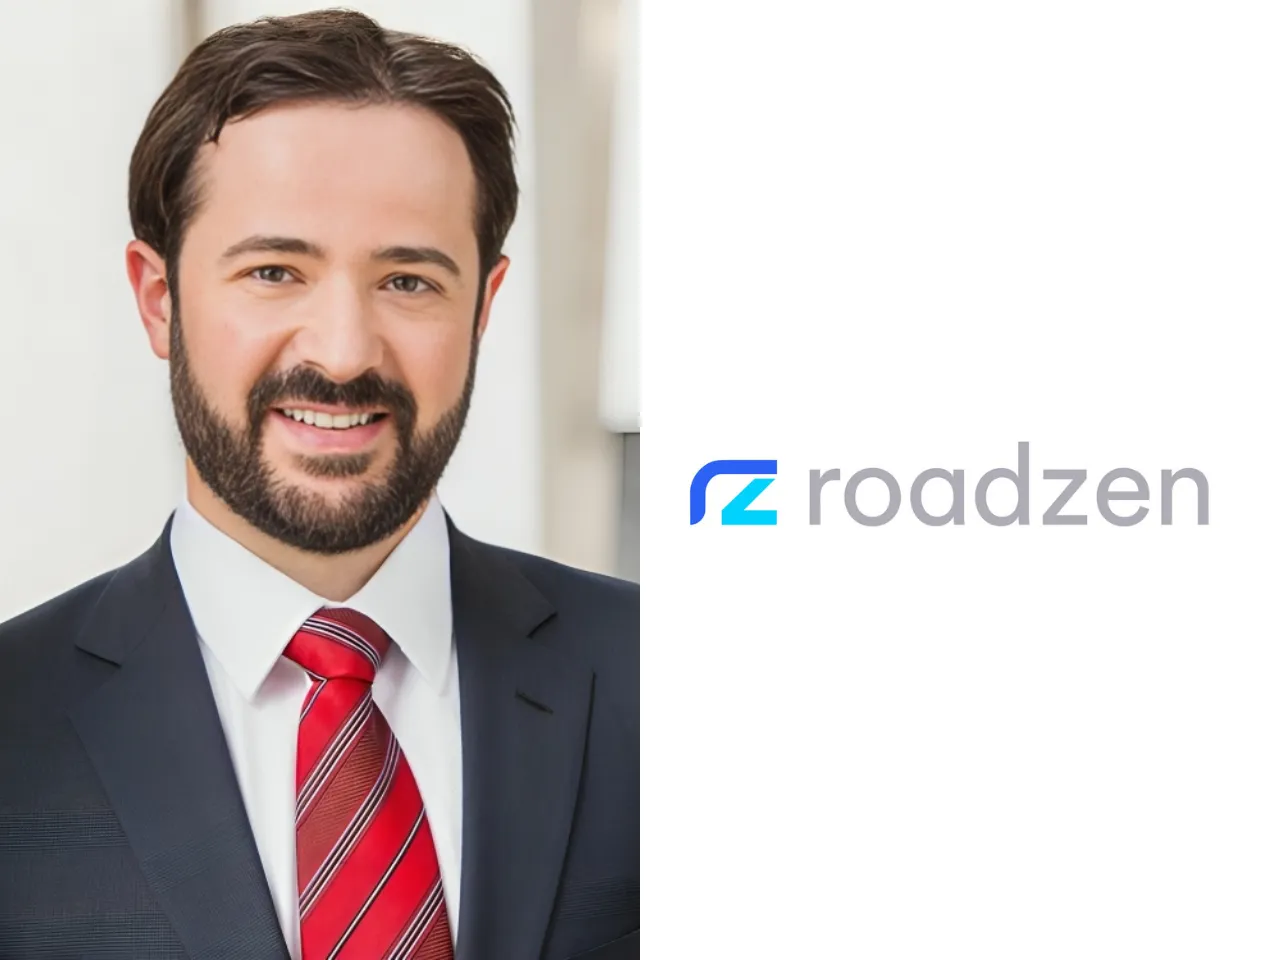 Roadzen appoints Jean-Noël Gallardo as Global Chief Financial Officer